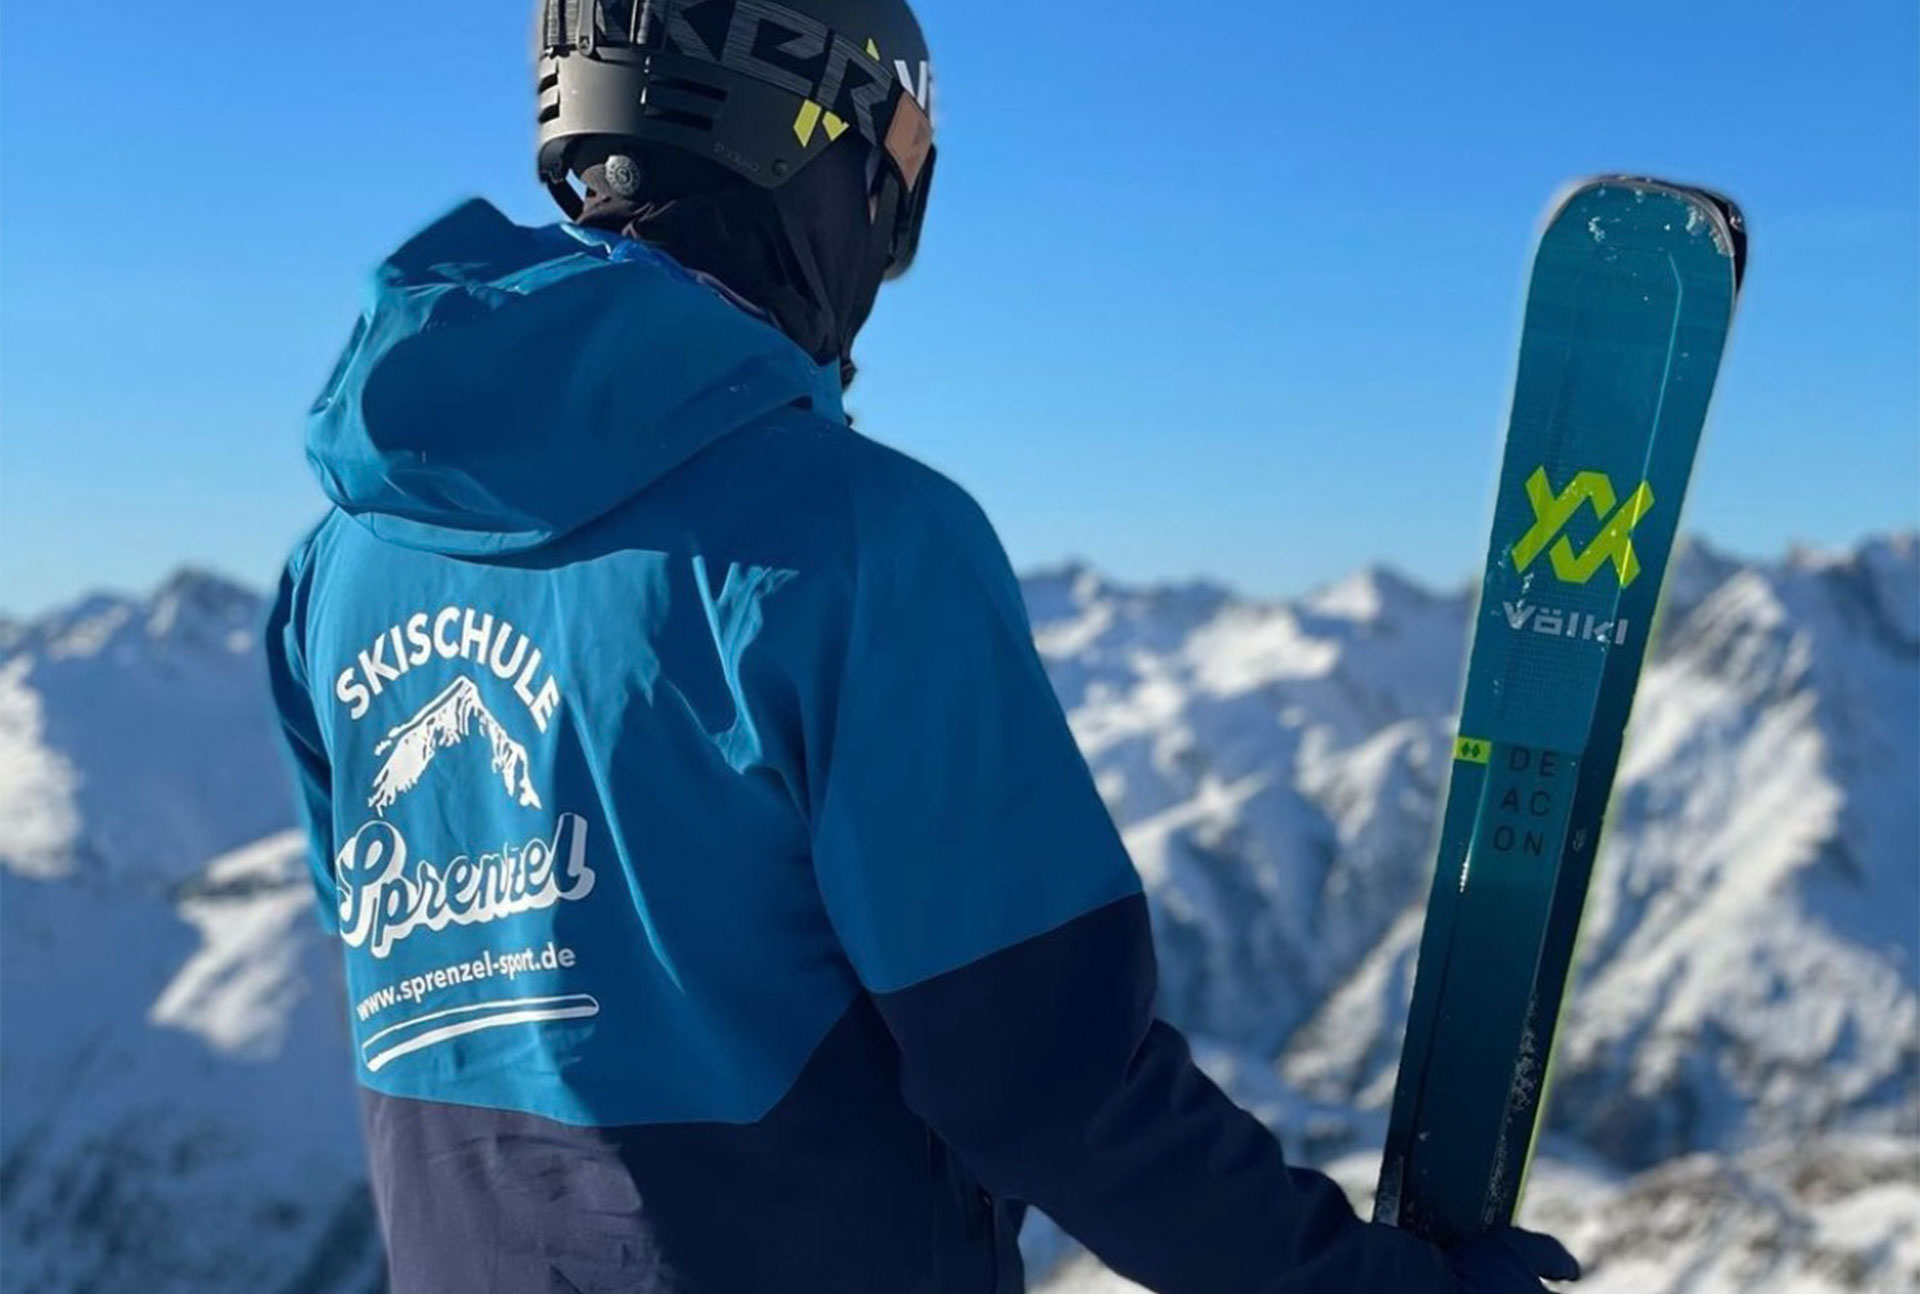 Skischule Sprenzel Garmisch-Partenkirchen